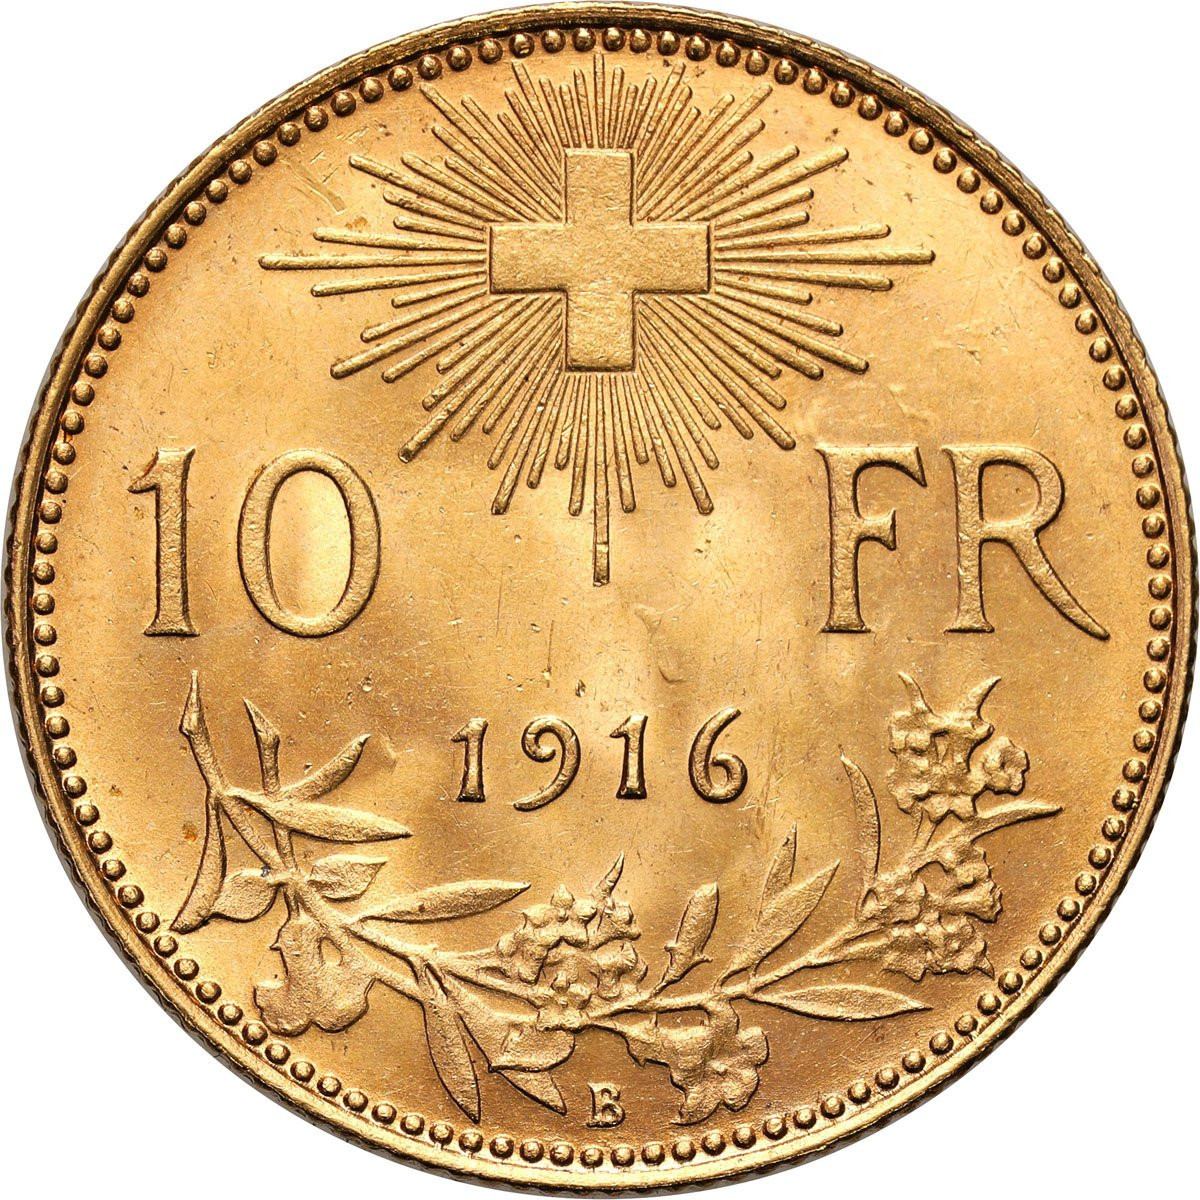 Szwajcaria. 10 franków 1916 - PIĘKNE